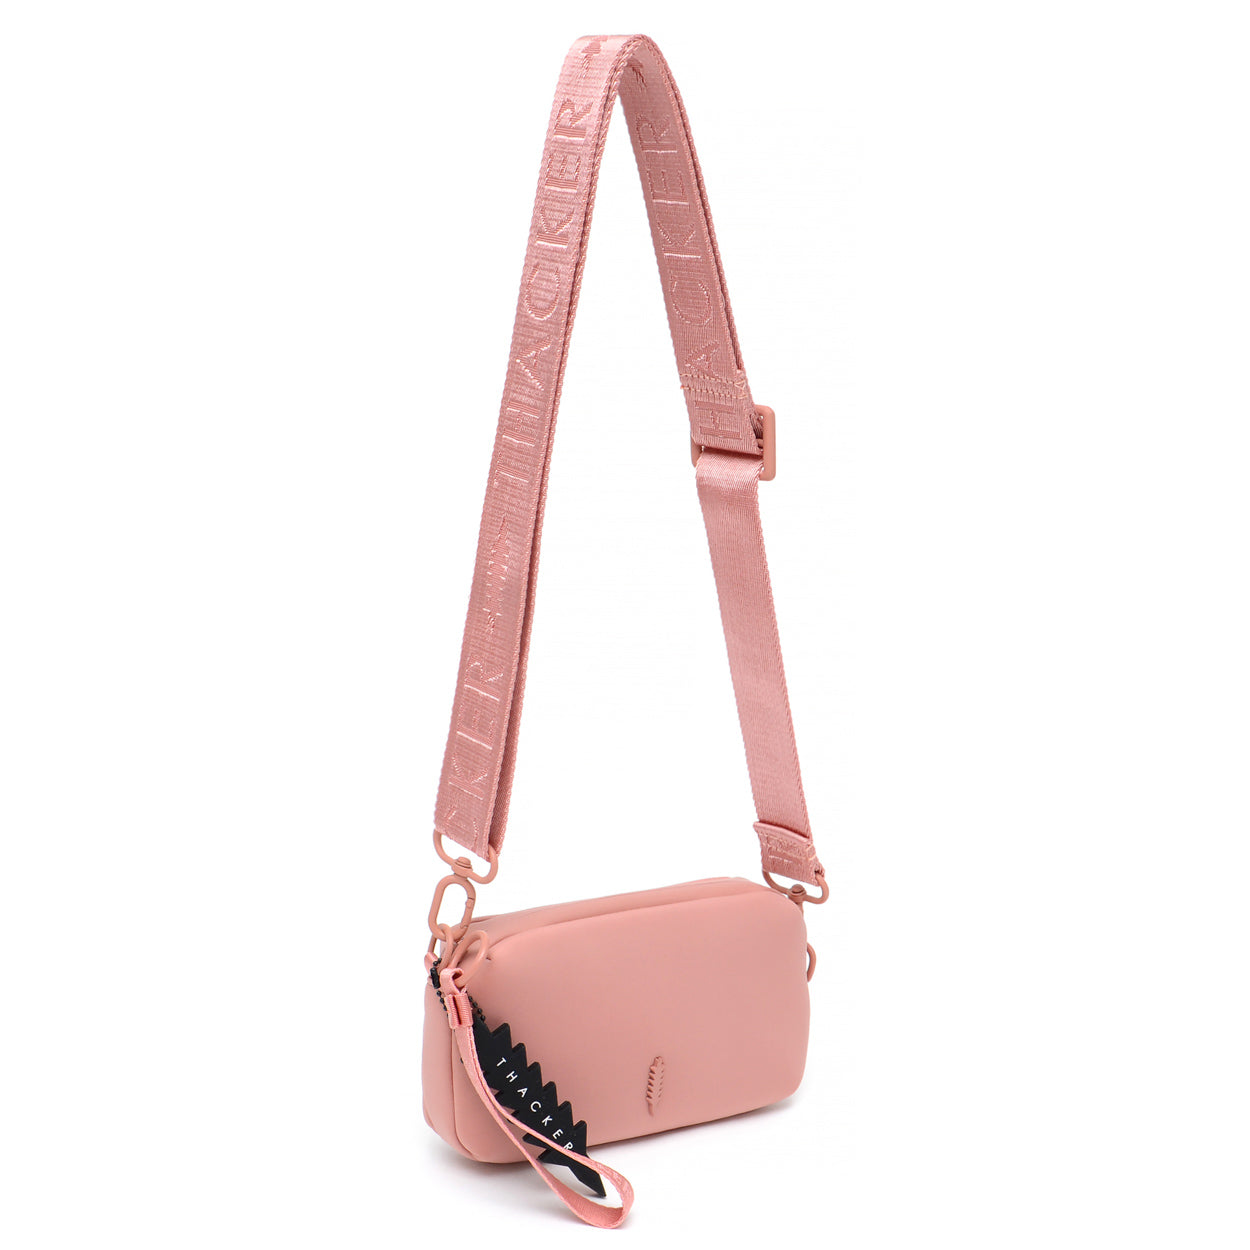 OFF-WHITE Binder Clip Shoulder Bag Black White Blue Pink